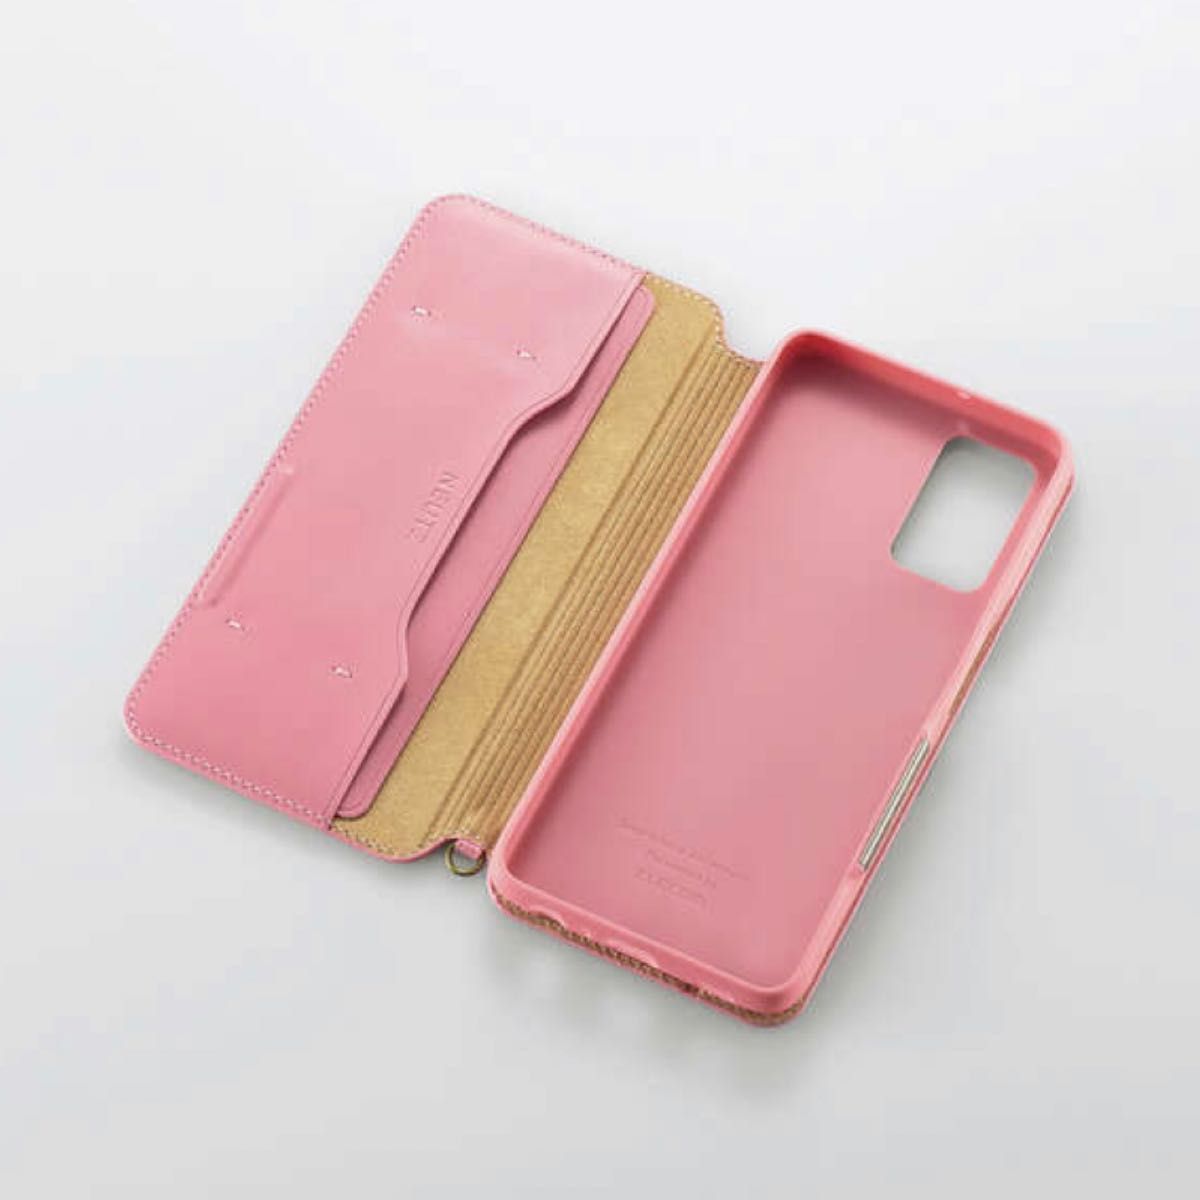 エレコム Galaxy A32 5G / SCG08 手帳型スマホケース　カバー　新品　ピンク